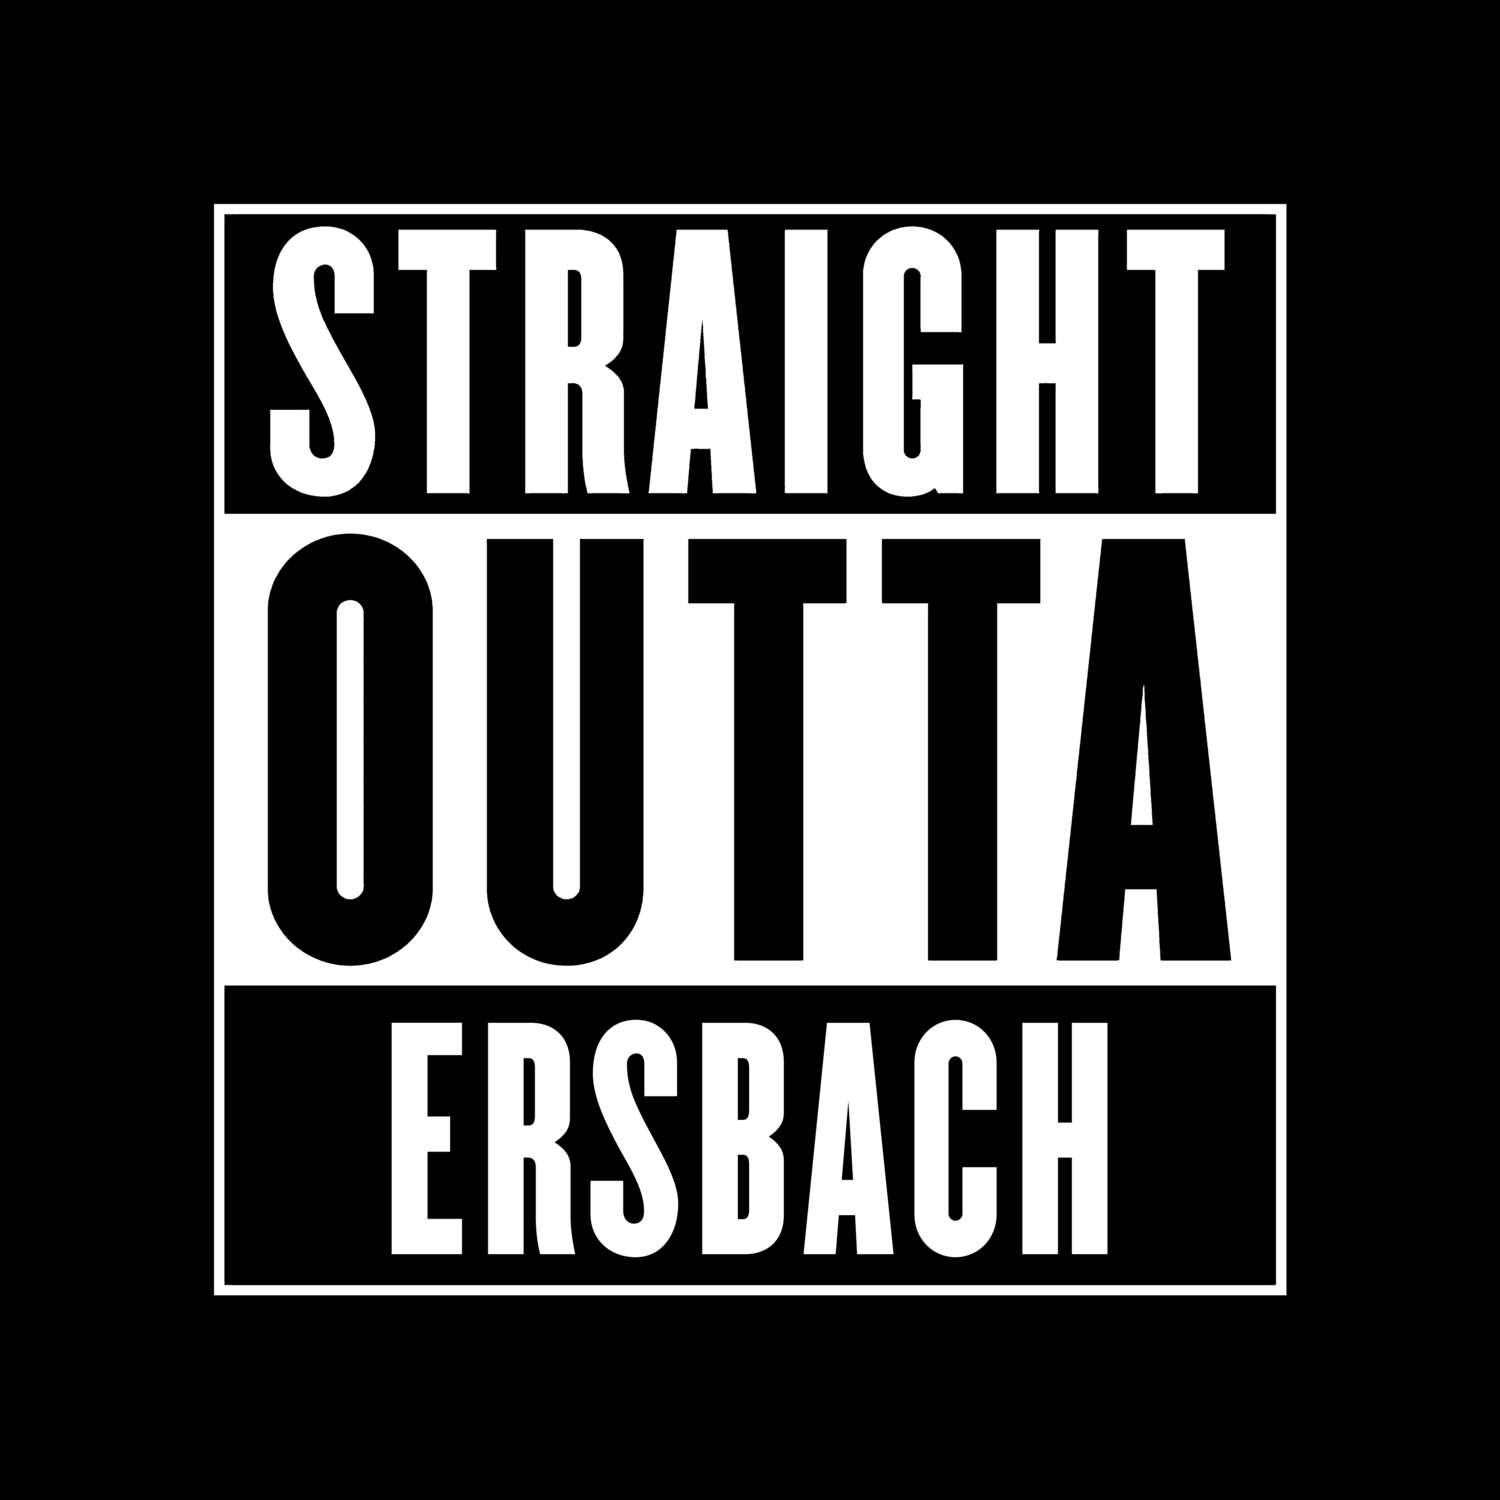 Ersbach T-Shirt »Straight Outta«